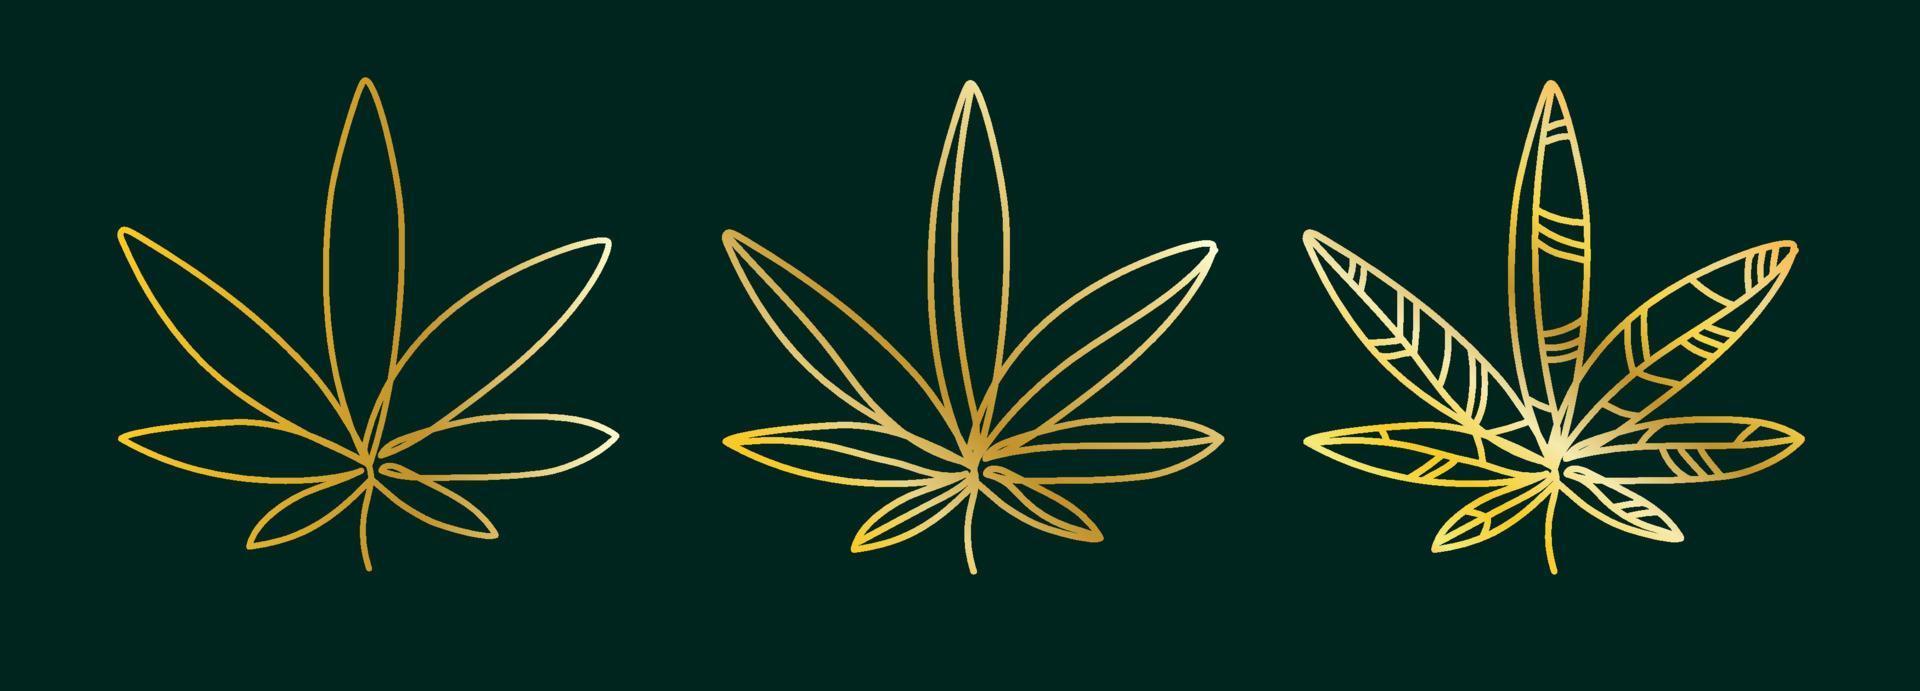 foglia di cannabis dorata, canapa su sfondo verde scuro set di loghi. semplice disegno vettoriale di cannabis illustrazione grafica minimalista